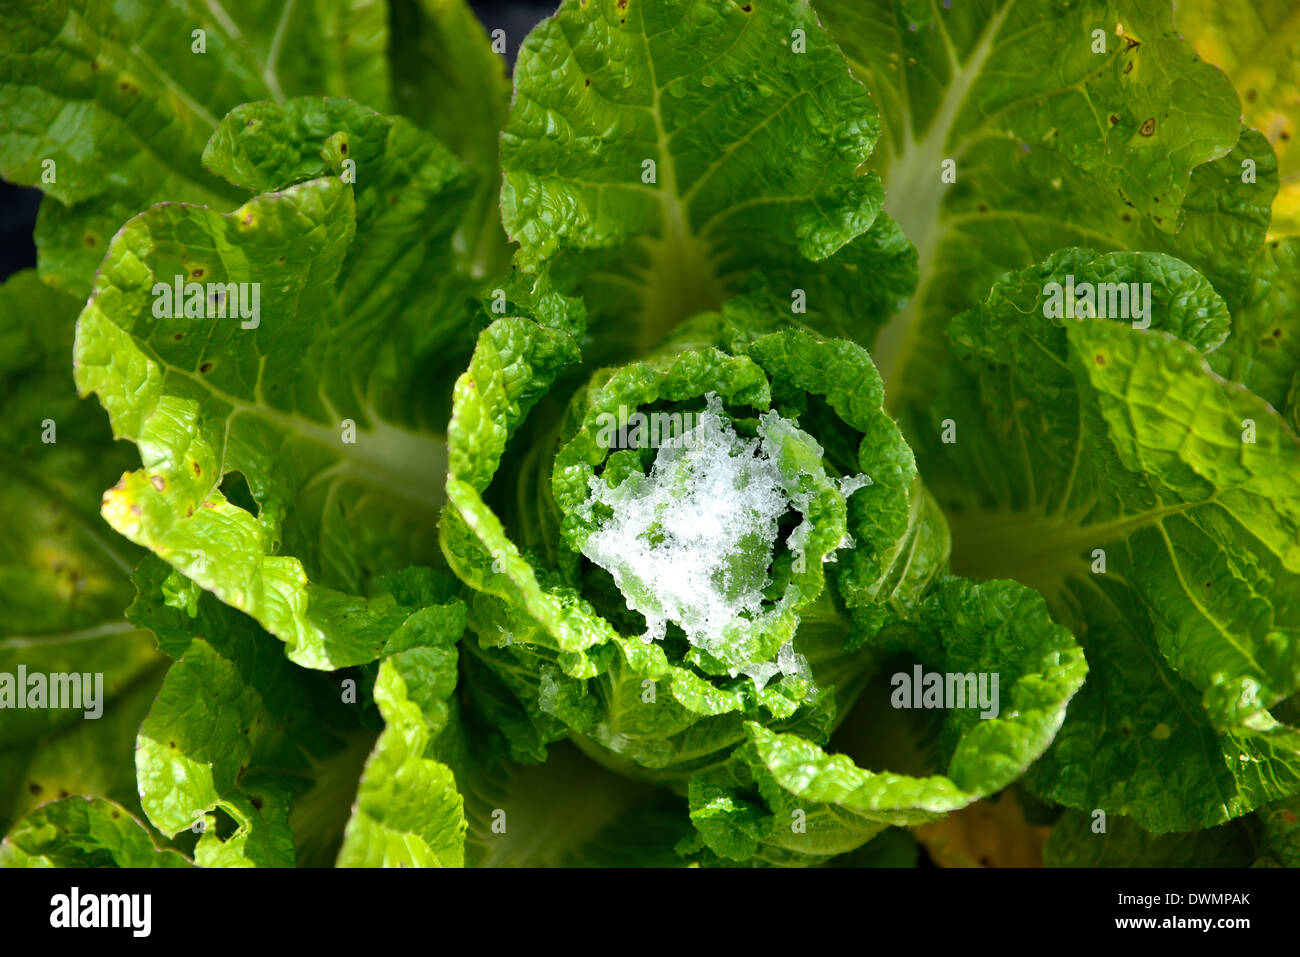 Le chou vert en vue de dessus avec les feuilles gelées. Banque D'Images